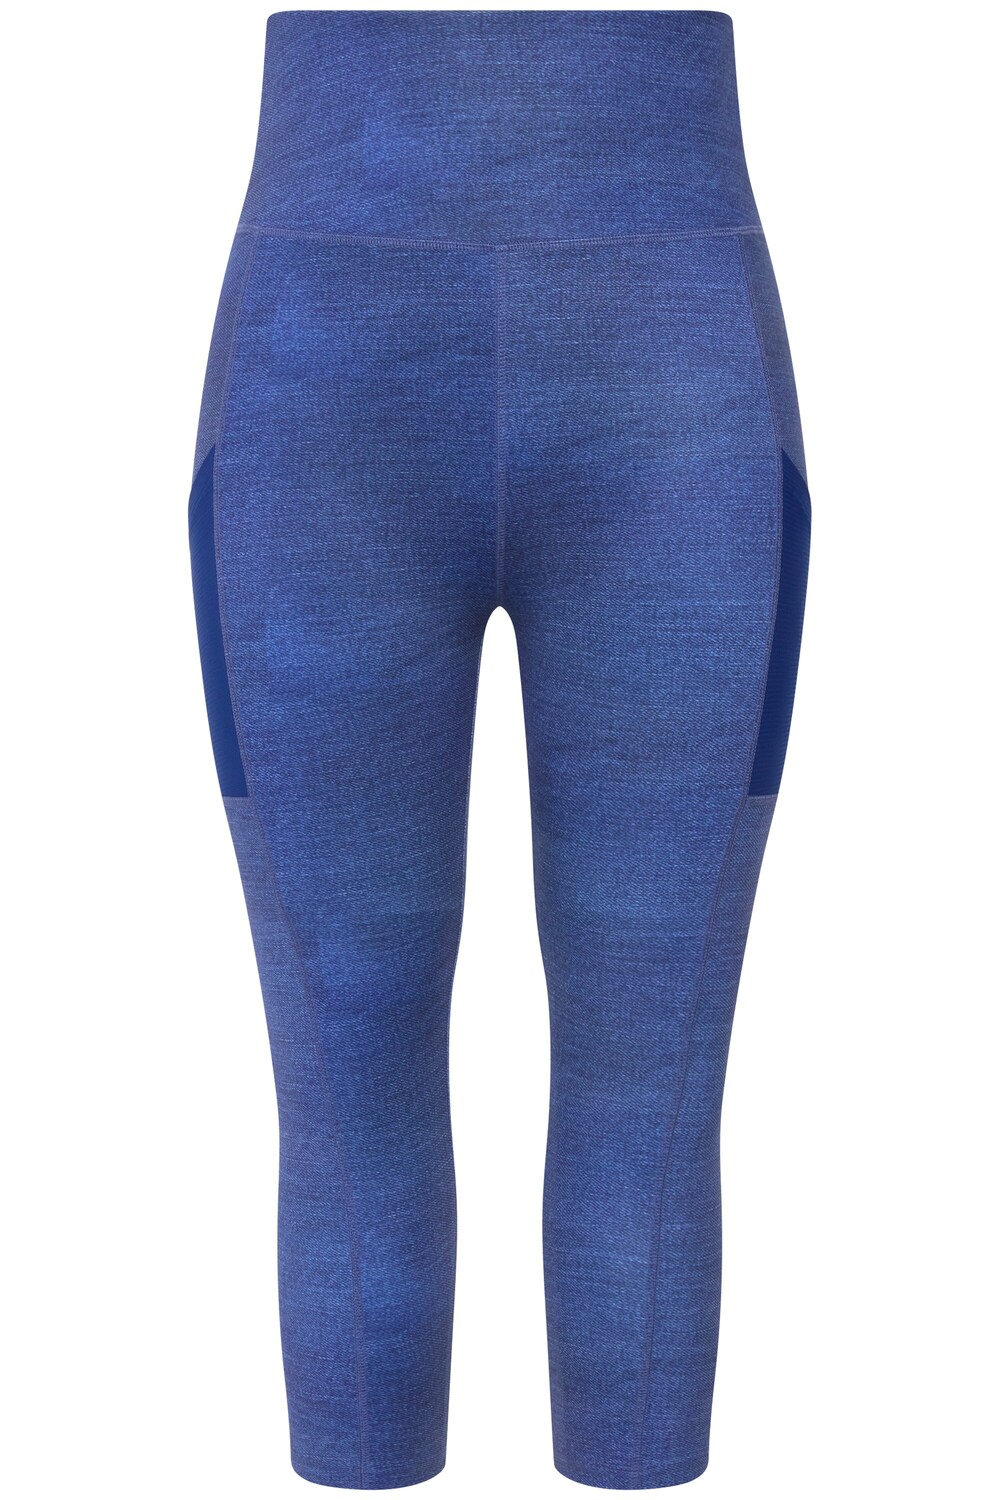 Обычные спортивные штаны Ulla Popken, аква/королевский синий 3 шт спортивные компрессионные штаны для йоги 3 4 для упражнений королевский синий